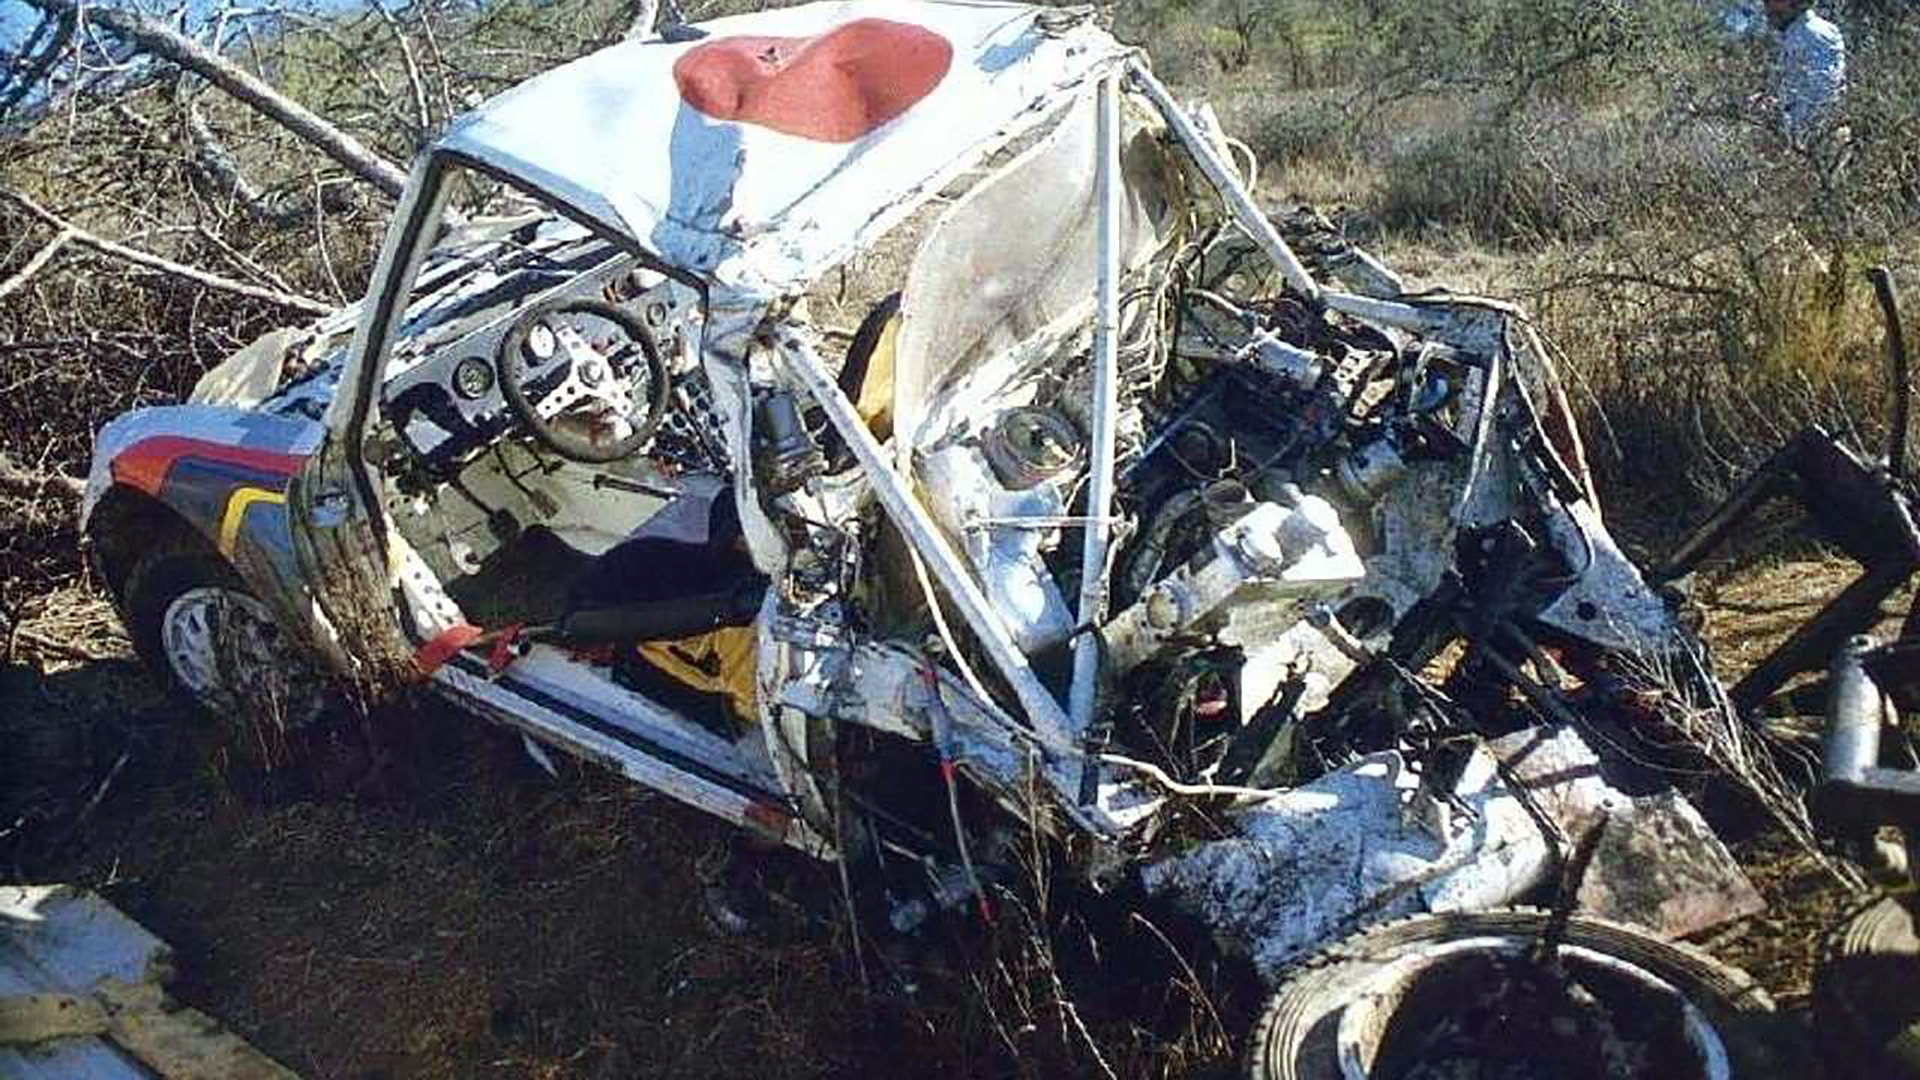 Los accidentes comenzaron en 1985. Bettega en Córcega y Vatanen en Argentina fueron los que encendieron las alarmas